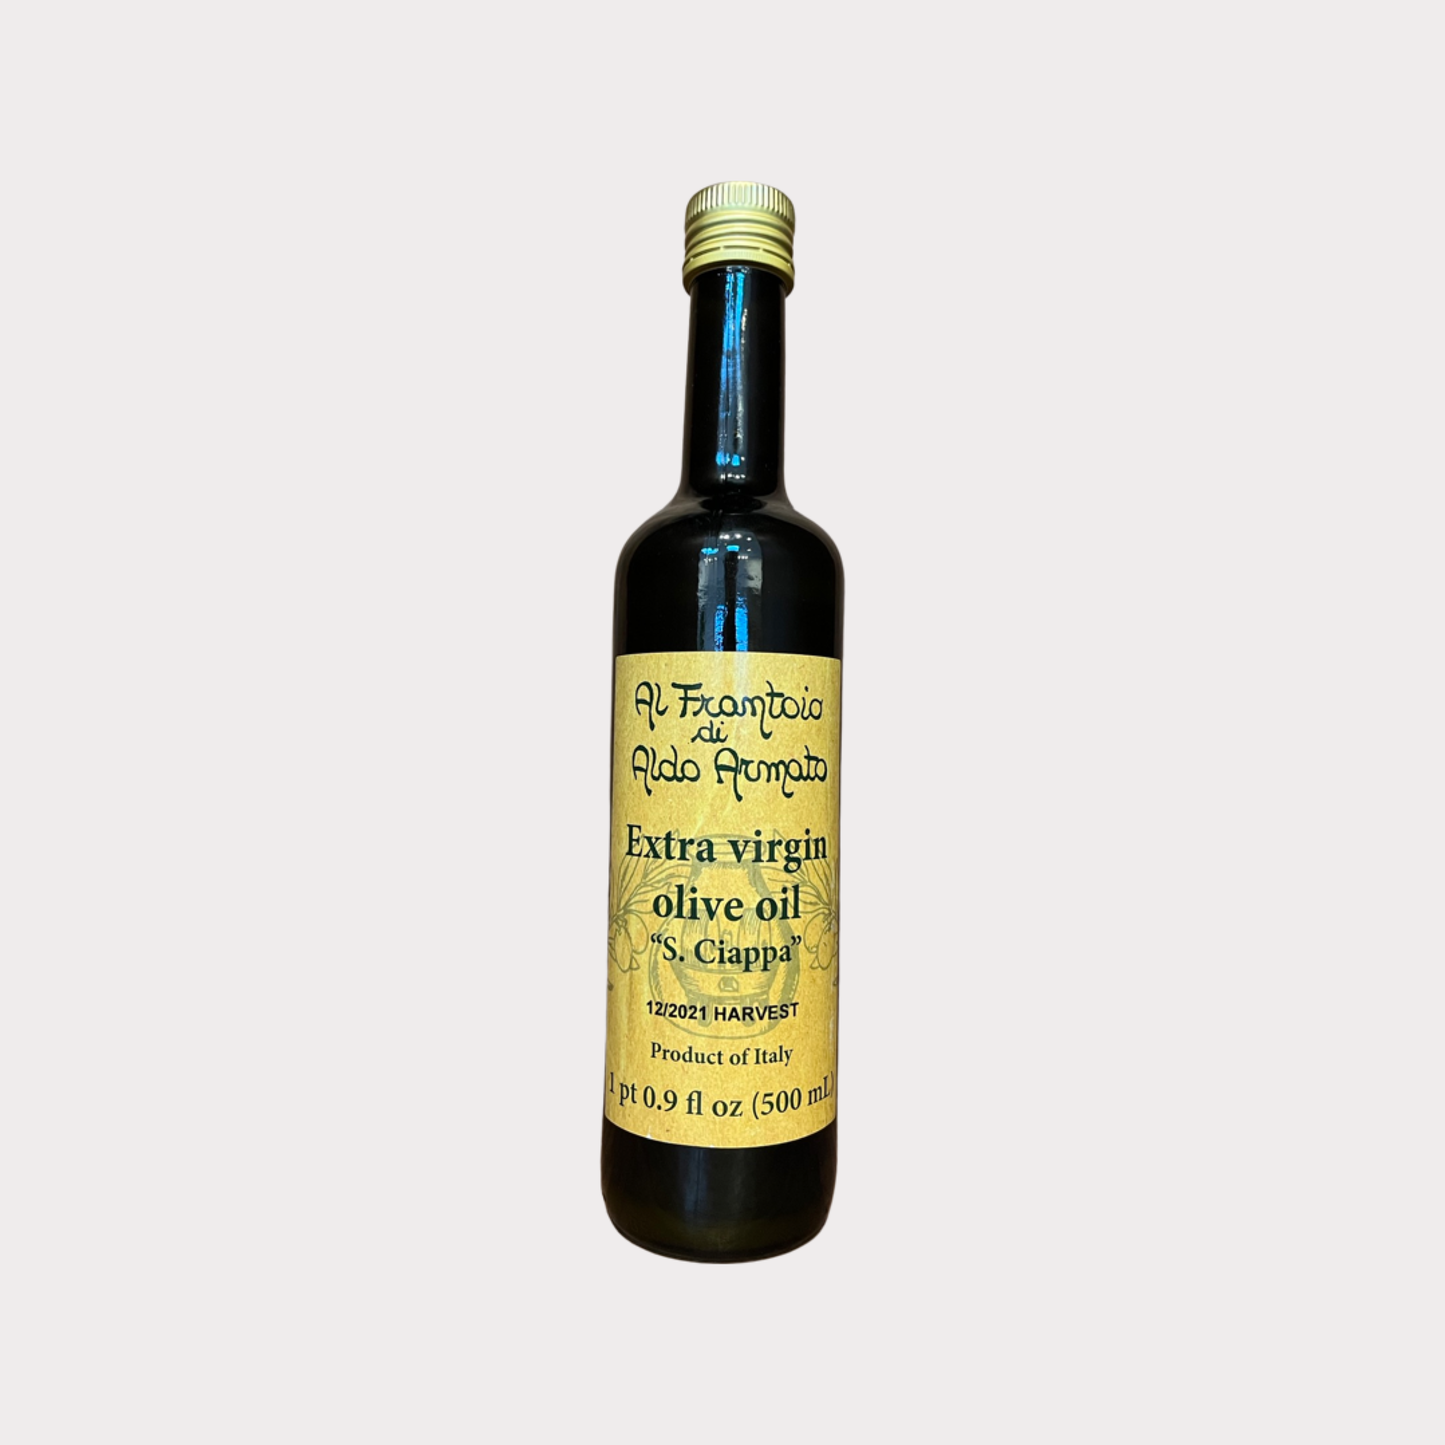 Aldo Armato Olive Oil "Olio d'Oliva Extra Vergine S. Ciappa" 2021 500ml